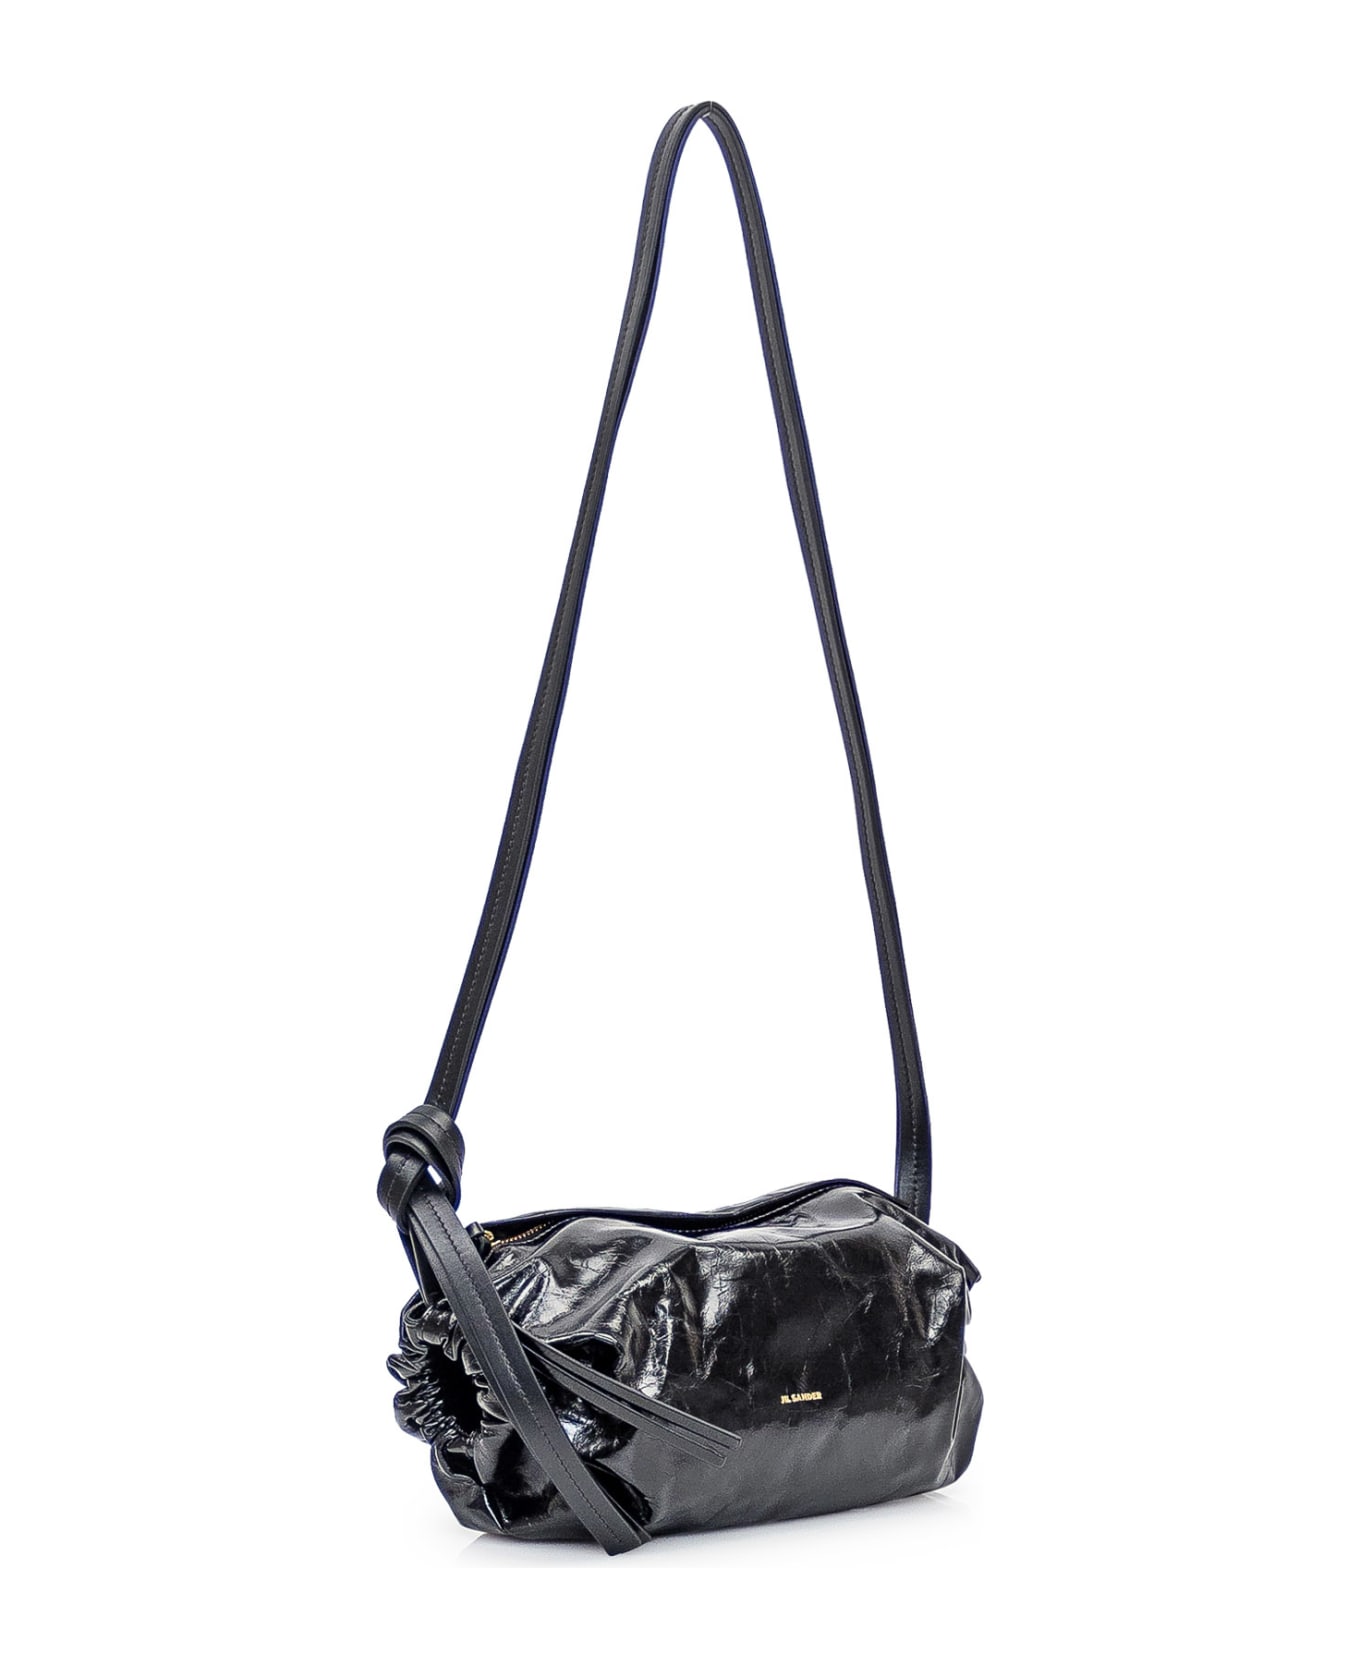 Jil Sander Leather Bag - NERO